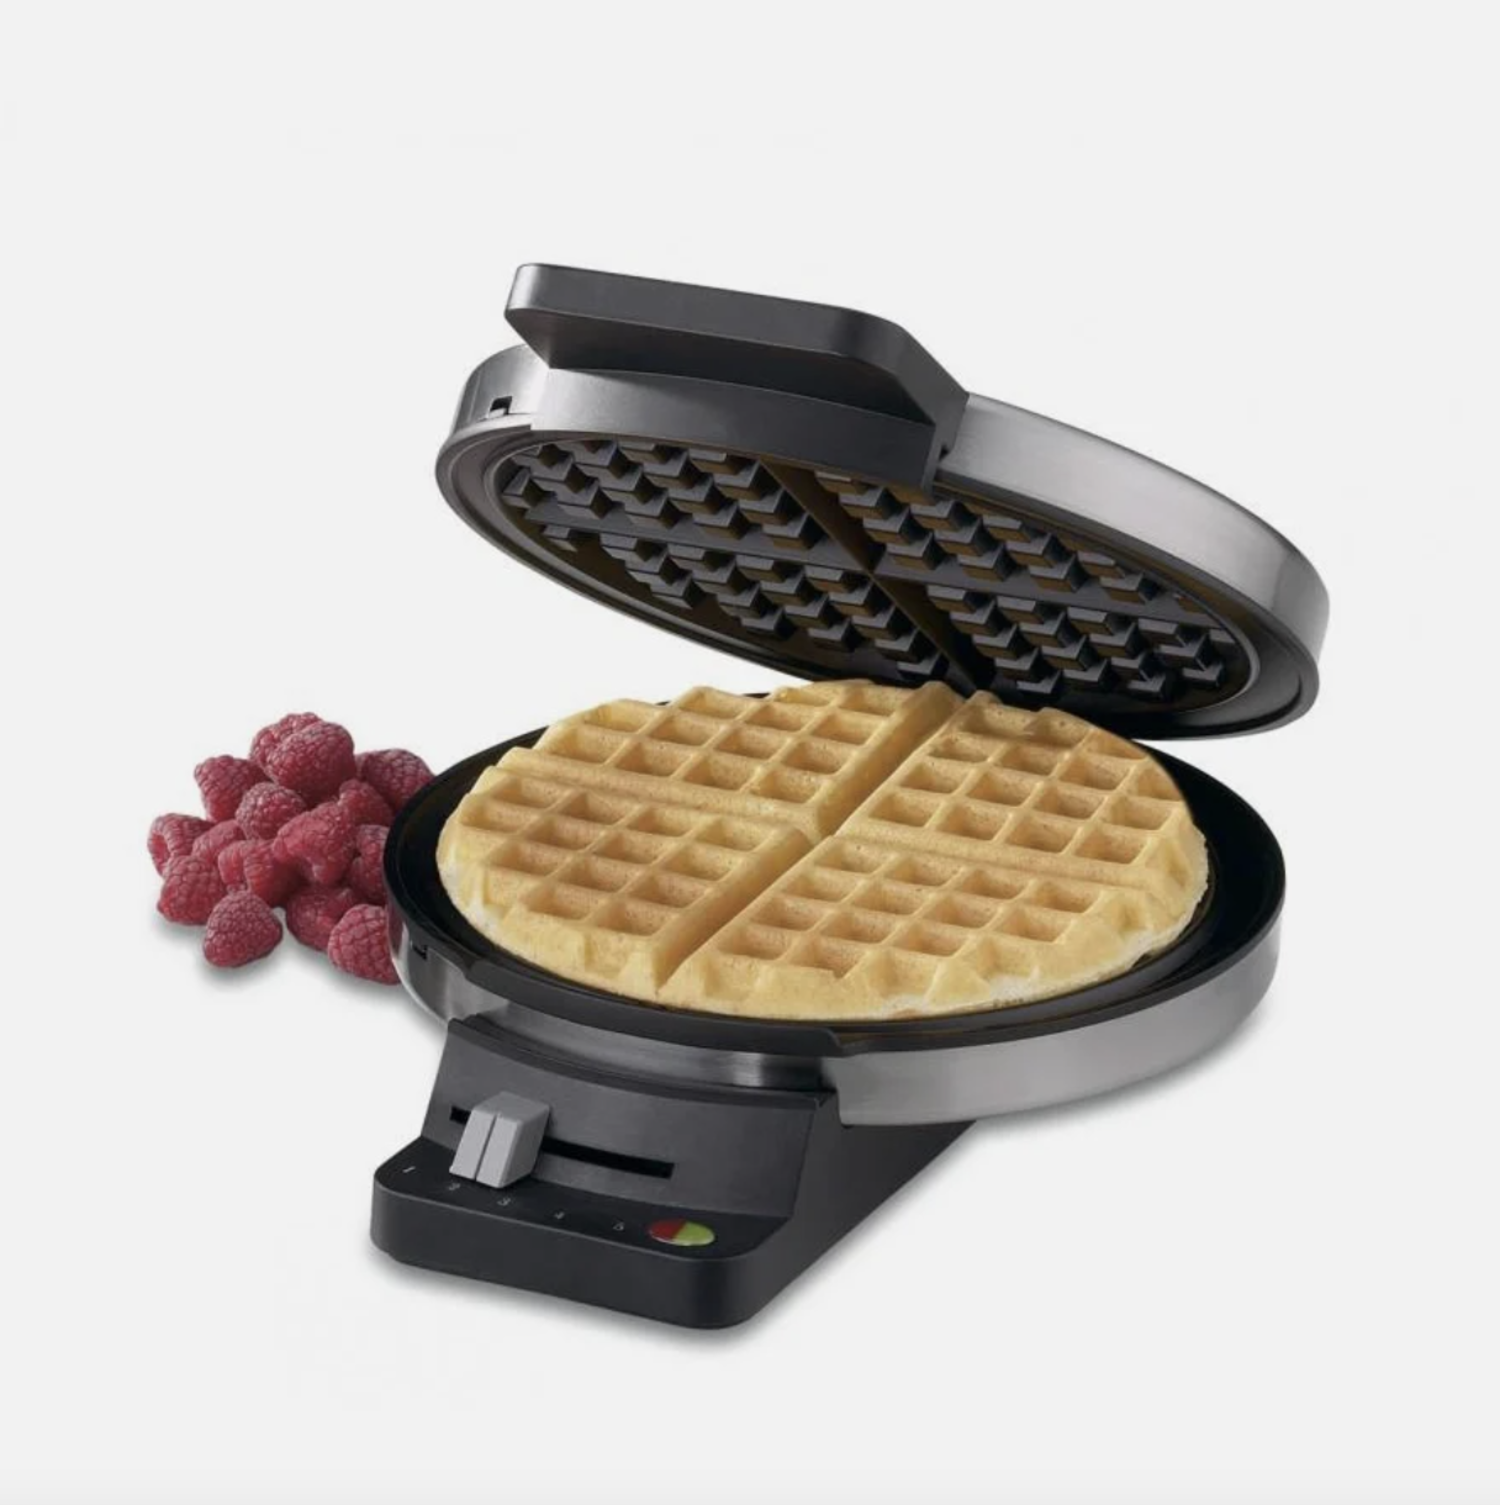 https://cdn.shoplightspeed.com/shops/633447/files/35664333/1500x4000x3/cuisinart-cuisinart-electric-round-waffle-maker.jpg